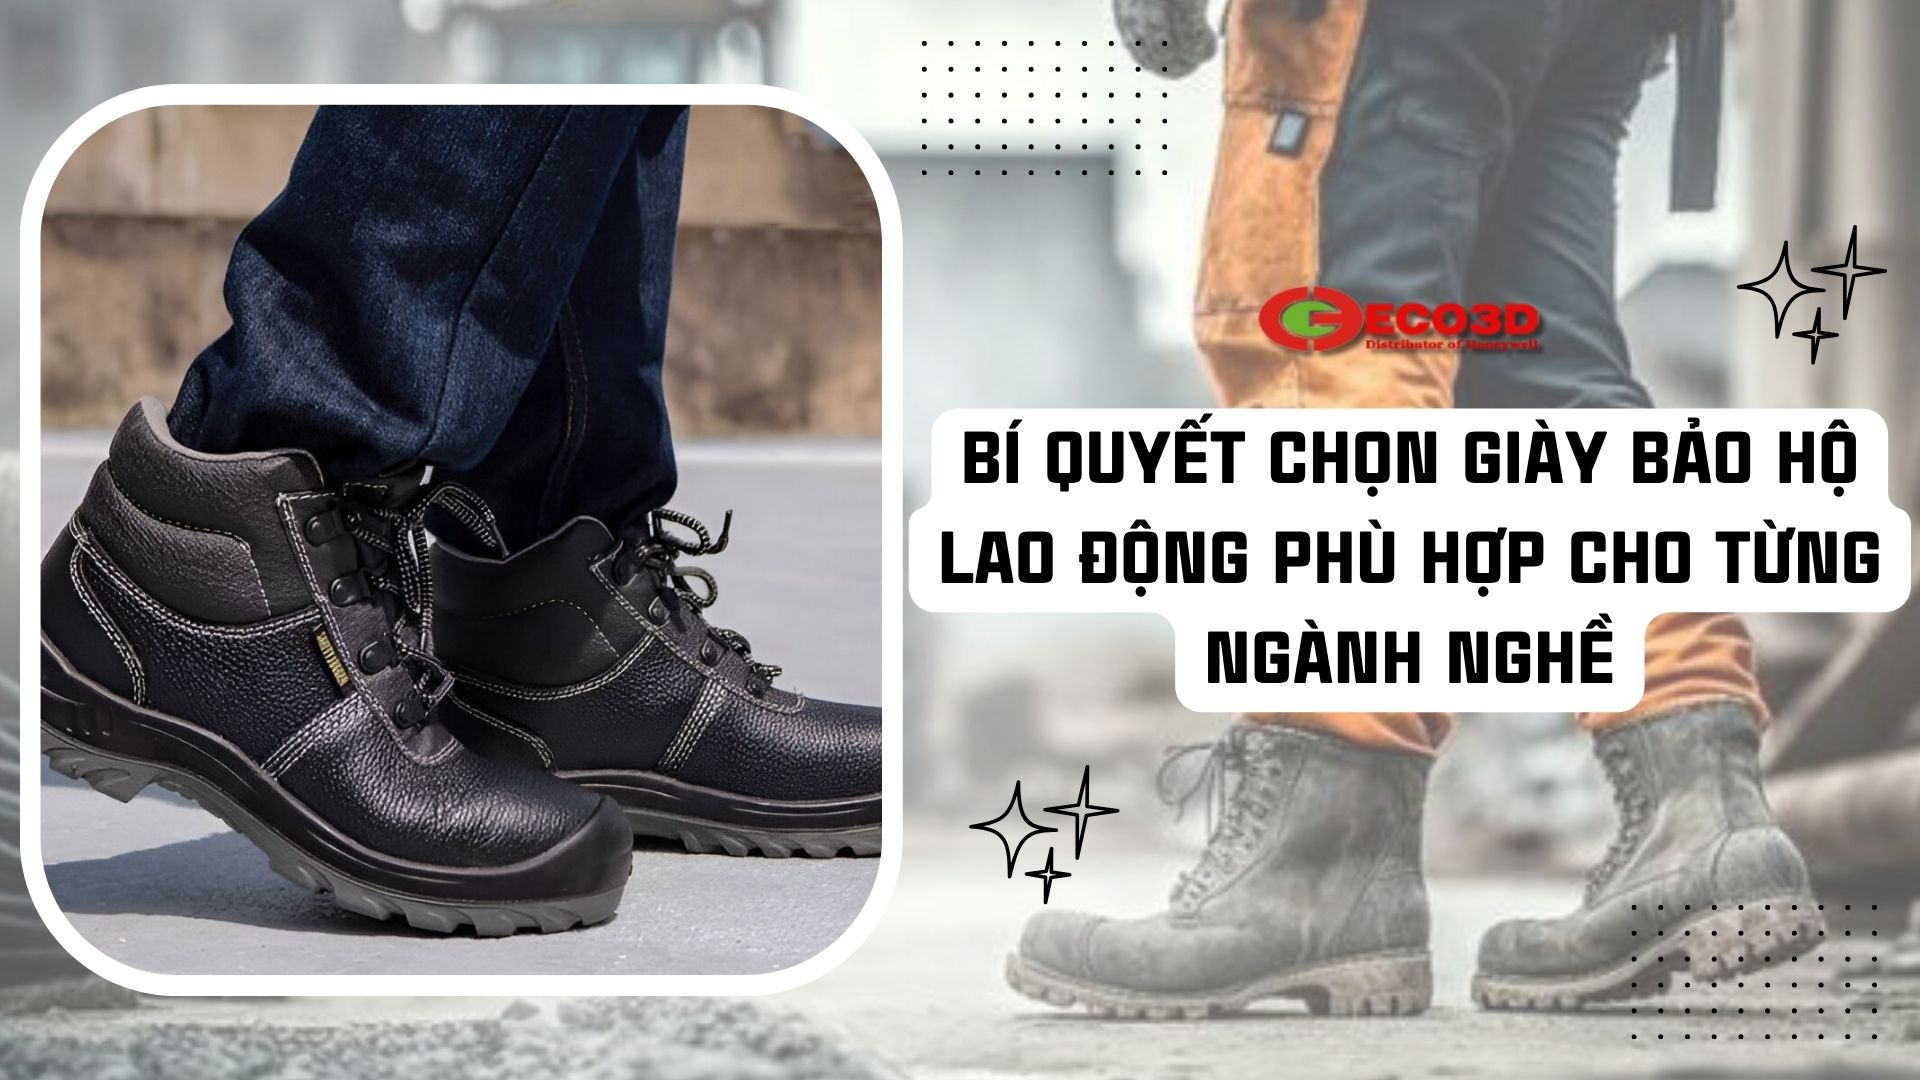 Bí quyêt chọn giày bảo hộ lao động phù hợp cho từng ngành nghề